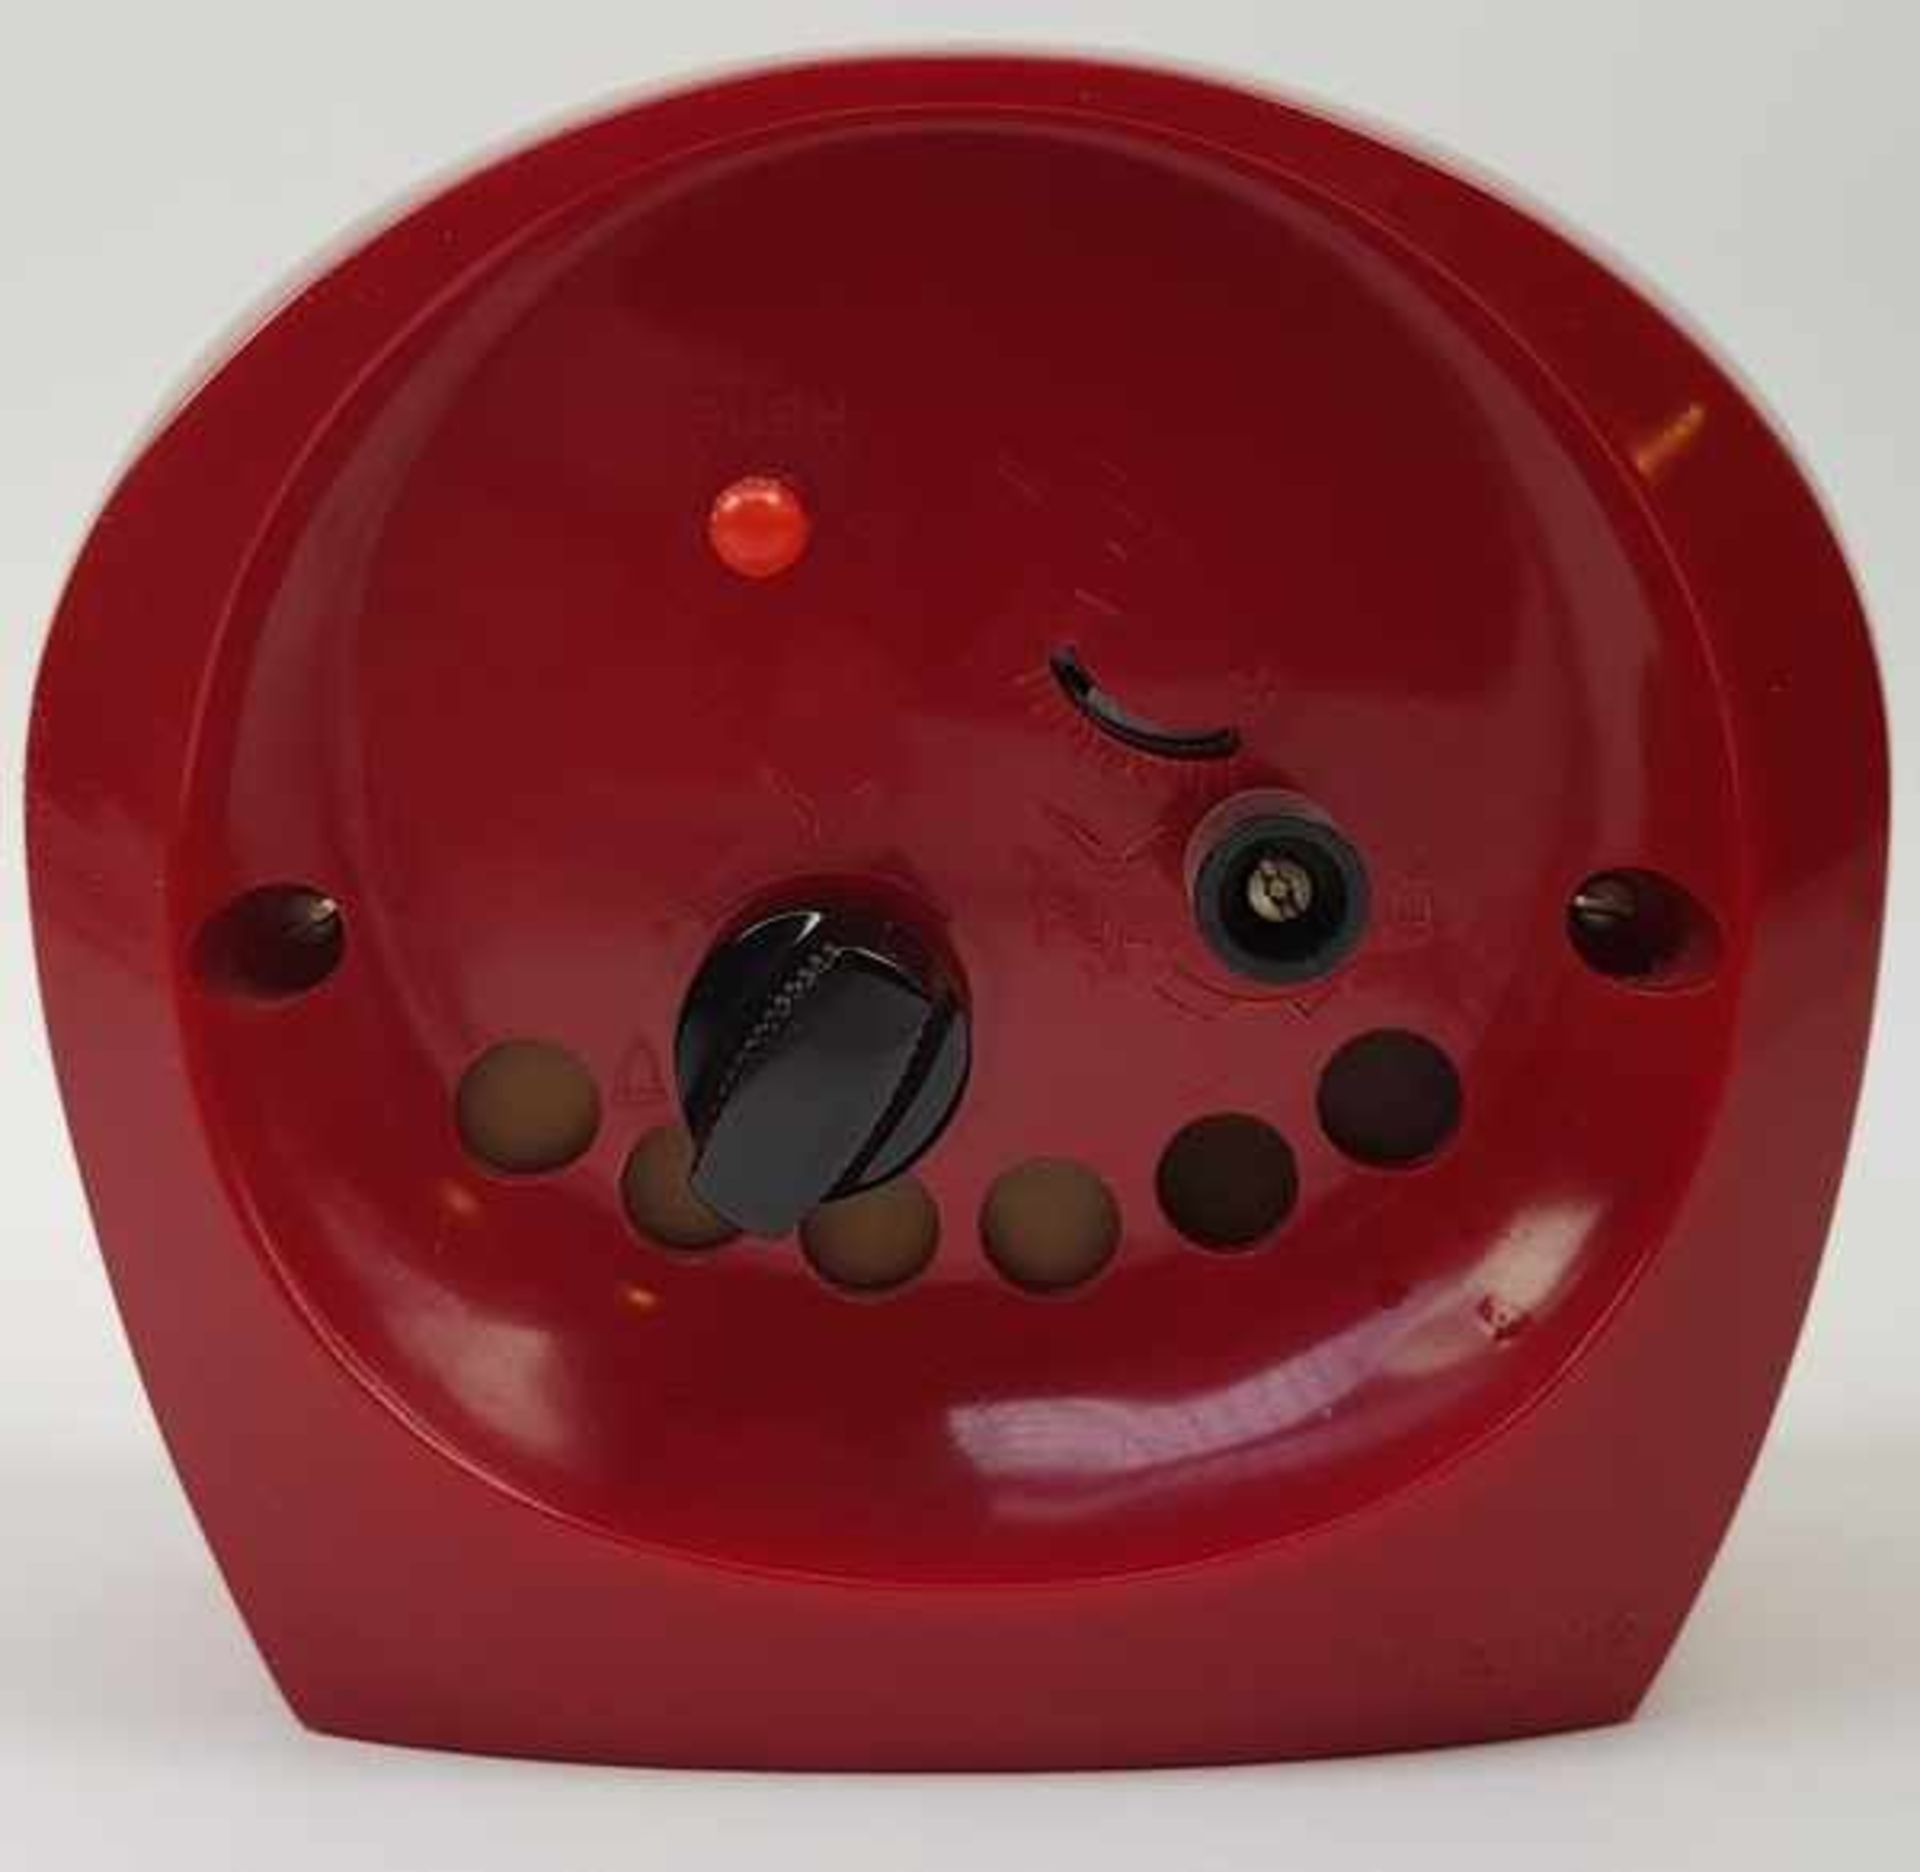 (Design) Klok Rhythm Japan Alarm 2 JewelsRhythm Space Age jaren '70 klok, mechanisch met alarm. - Bild 2 aus 5